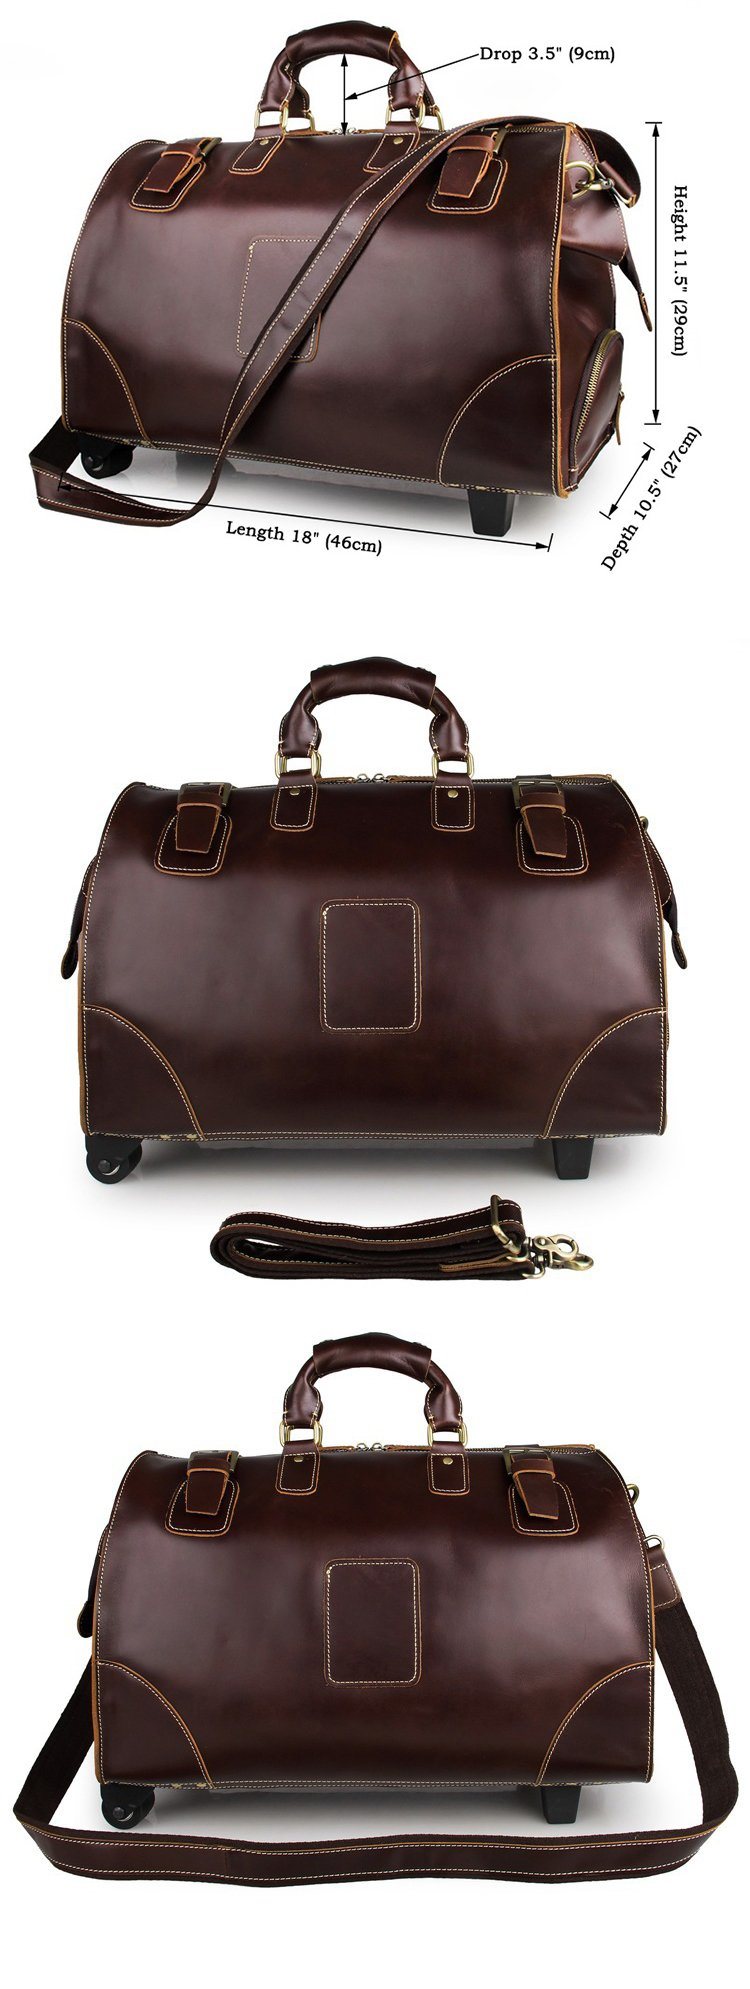 OEM Branded High Quality Vintage Leather Doctor Bag Trolley Bag